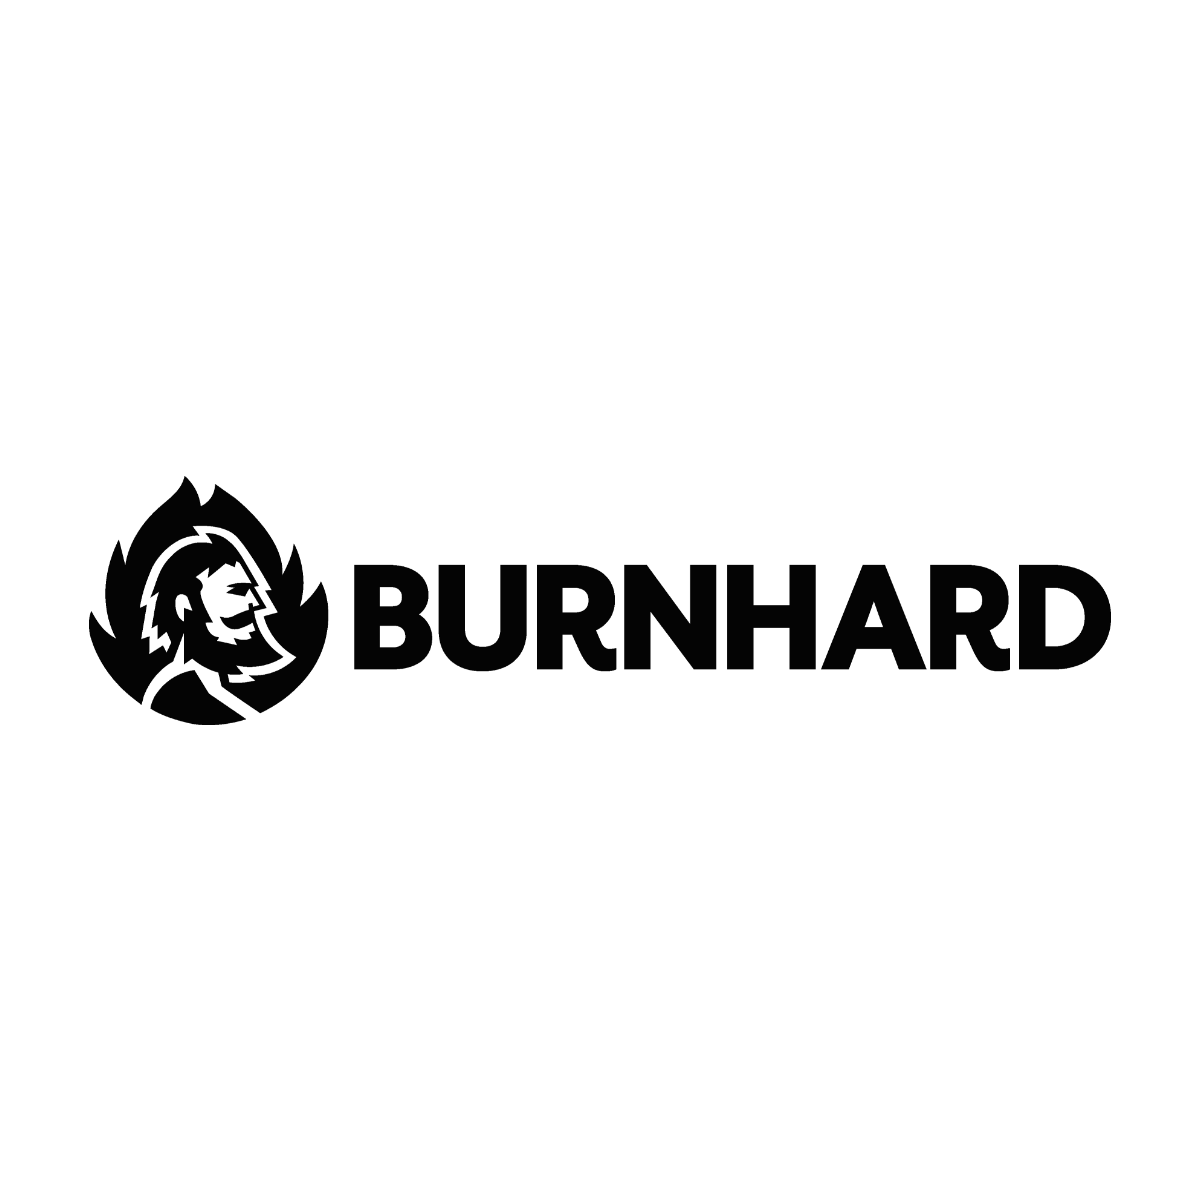 BURNHARD